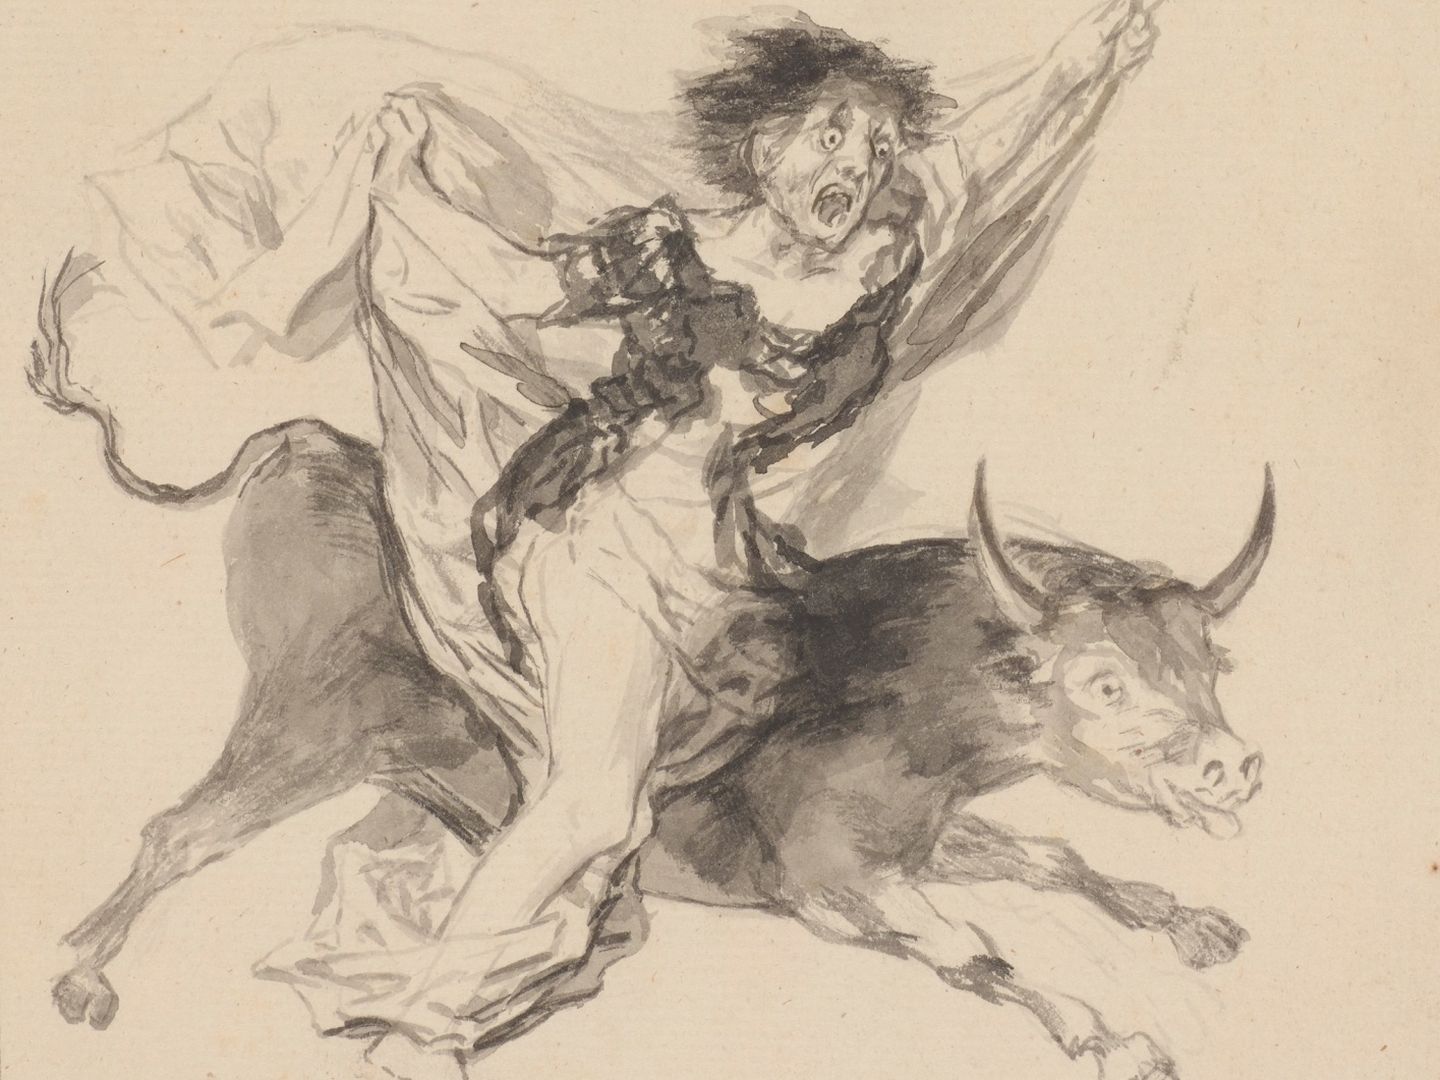 'Pesadilla', Francisco de Goya, c. 1816-20 (Courtauld Gallery)